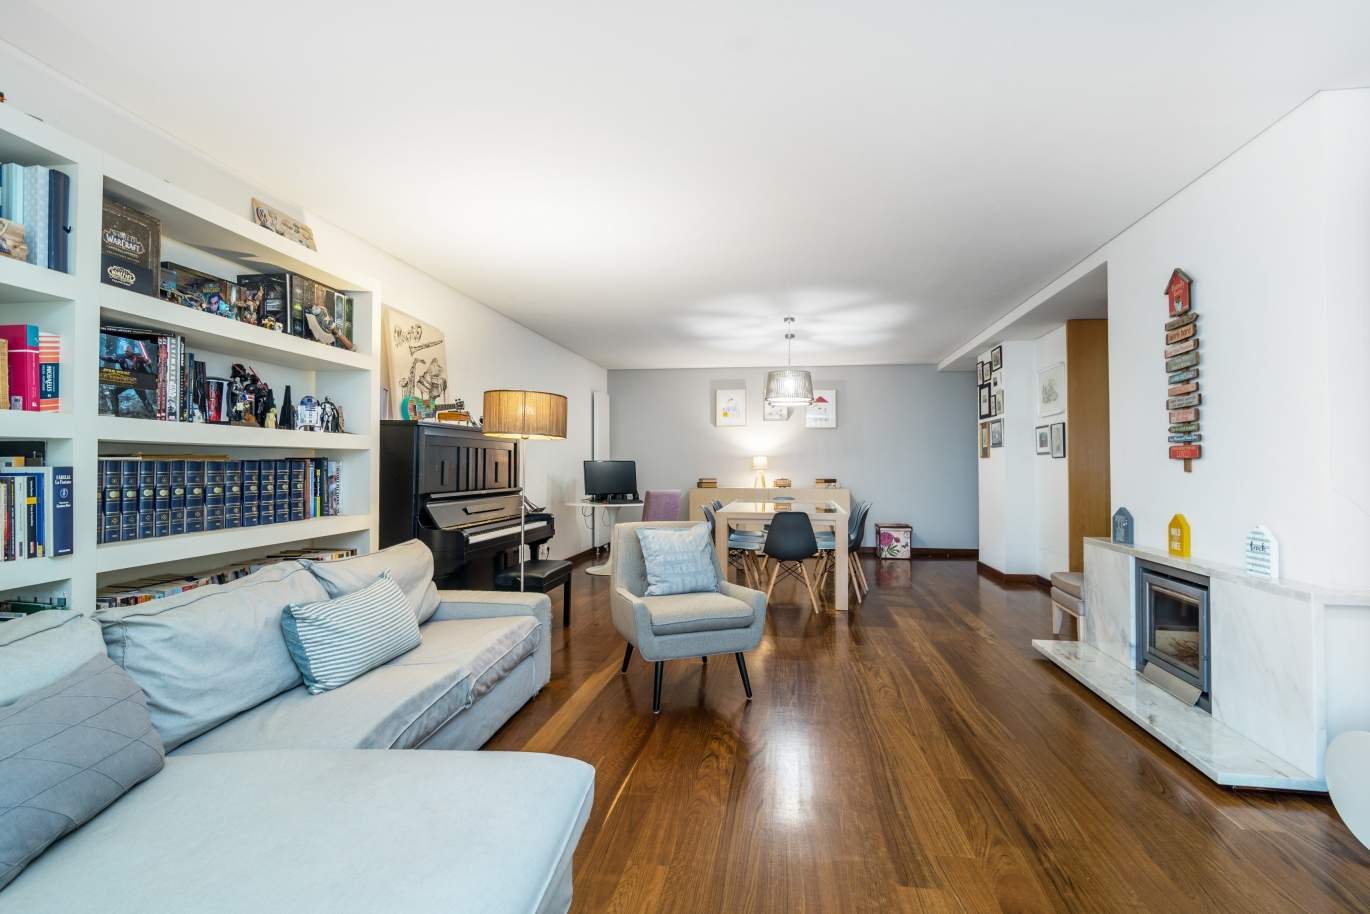 Venta apartamento en condominio privado con vistas río, Porto,Portugal_121026